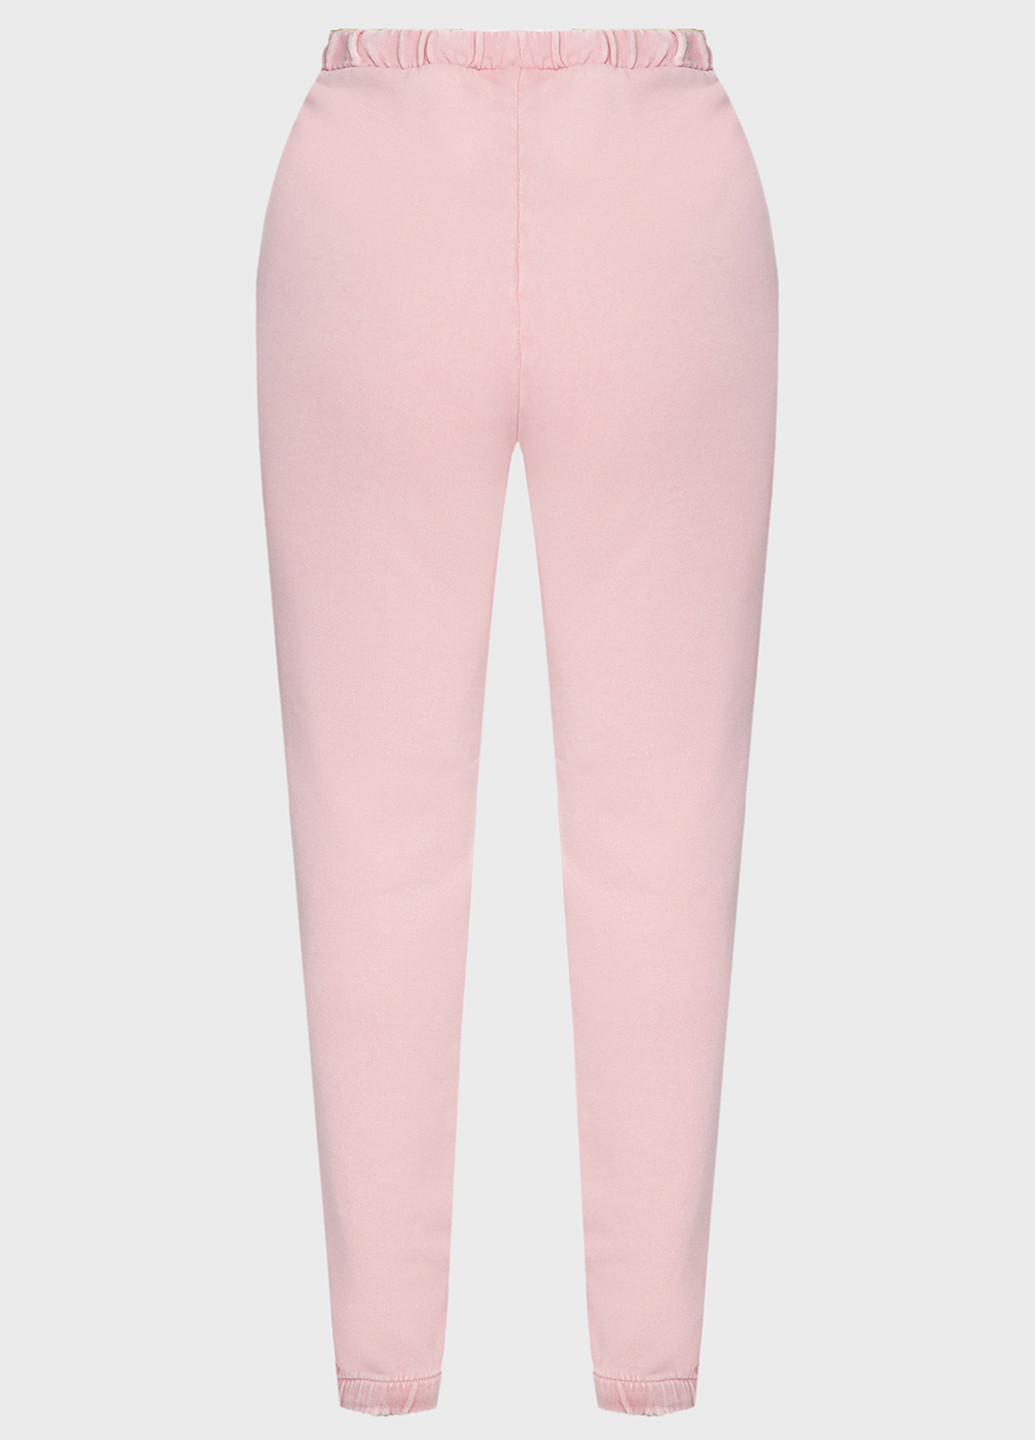 Светло-розовые спортивные демисезонные джоггеры брюки Guess